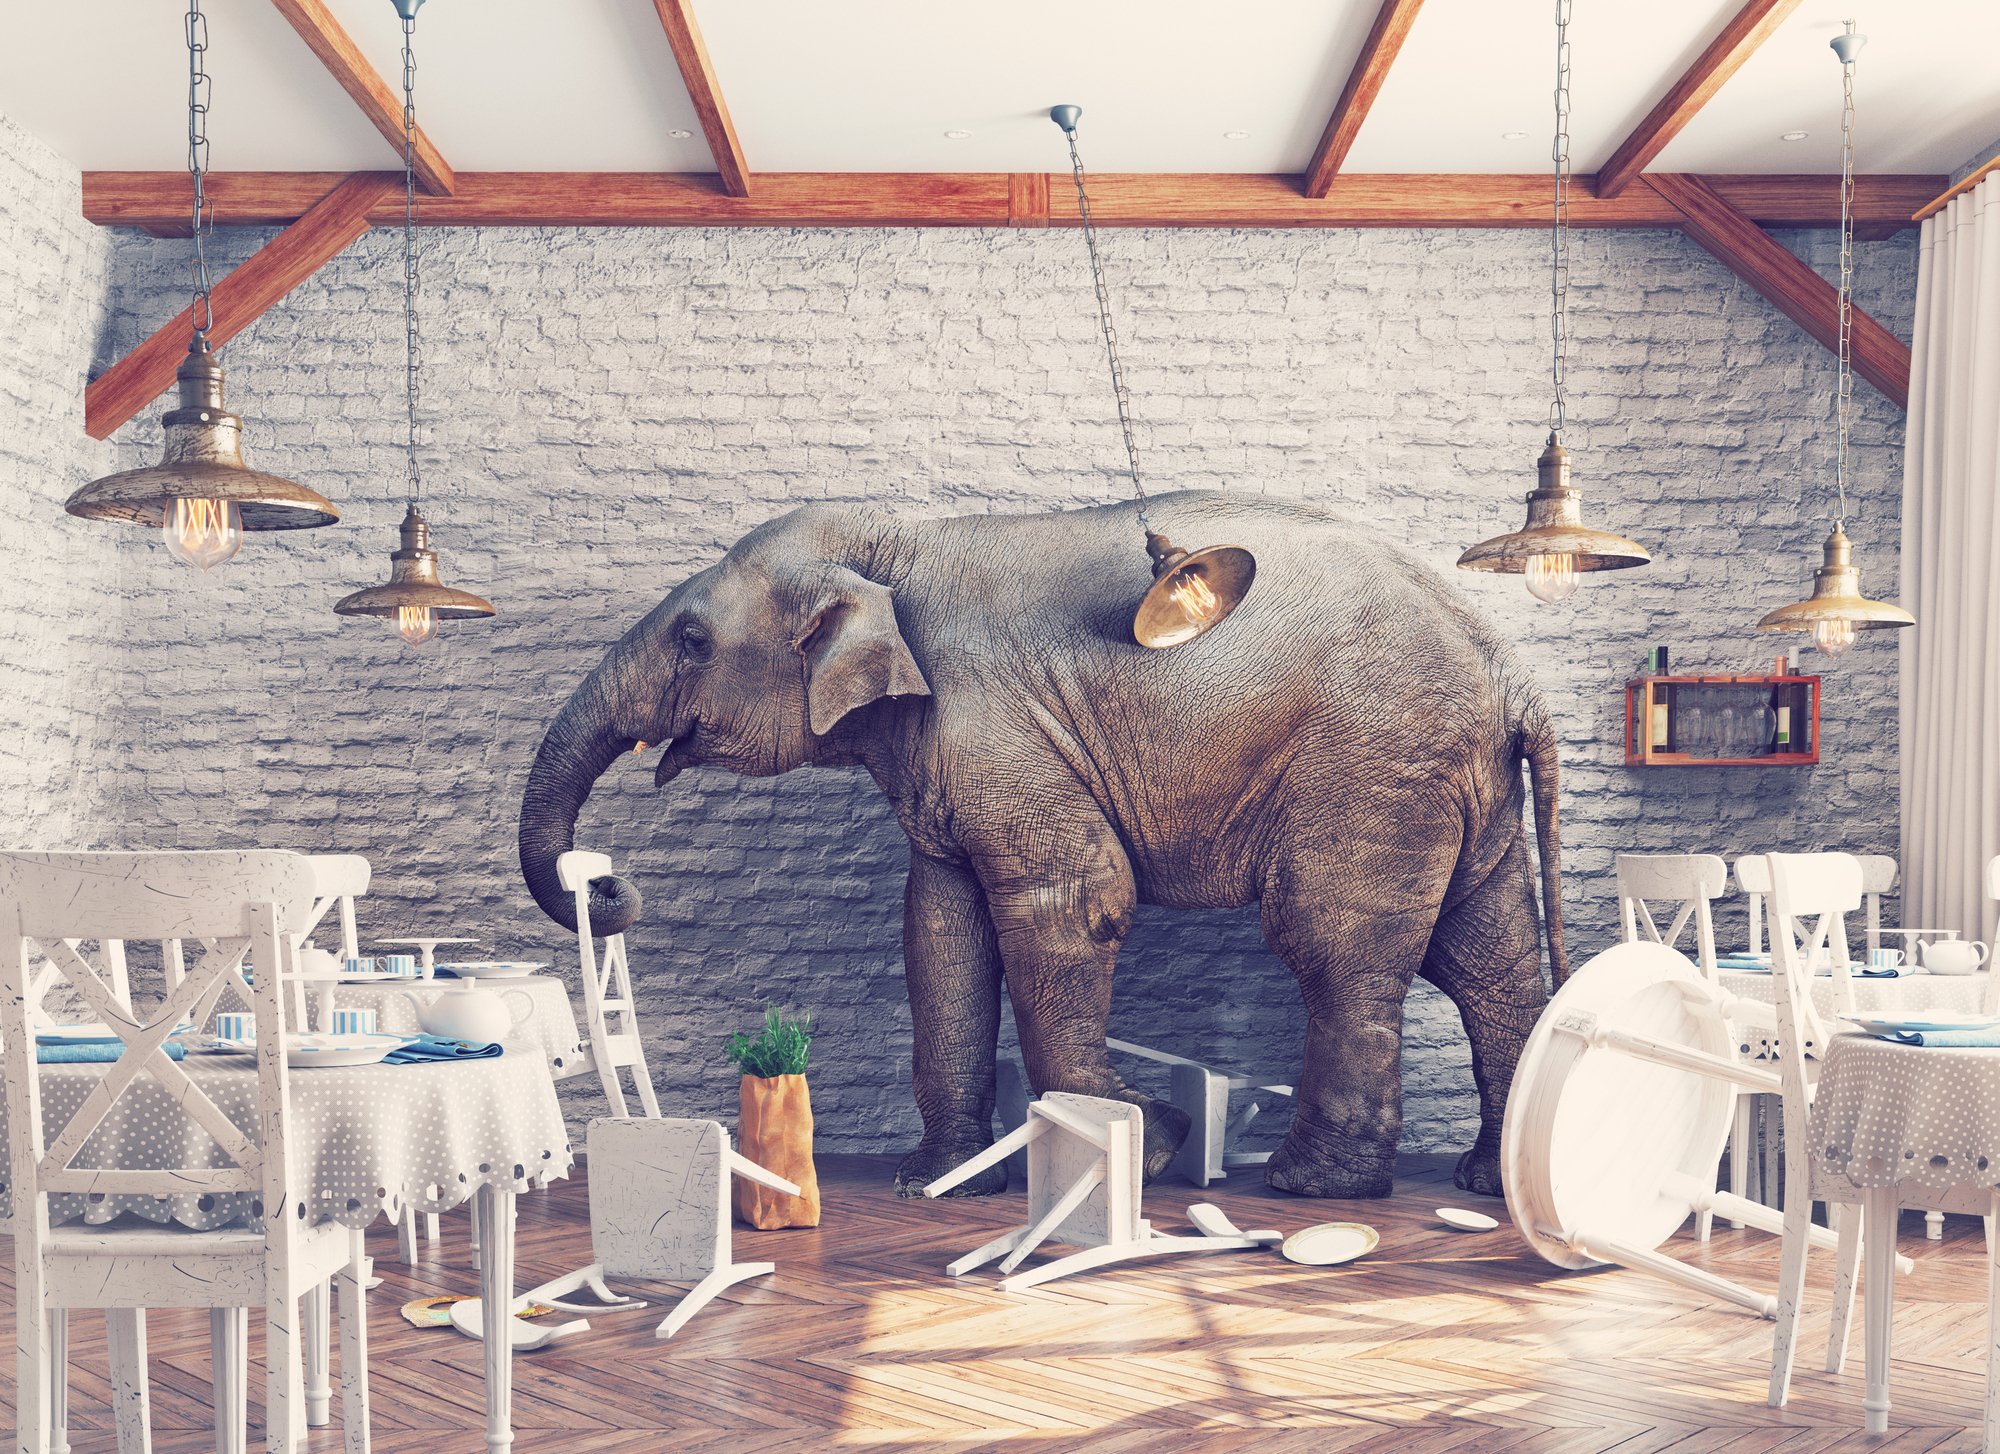 An elephant causing chaos inside a restaurant